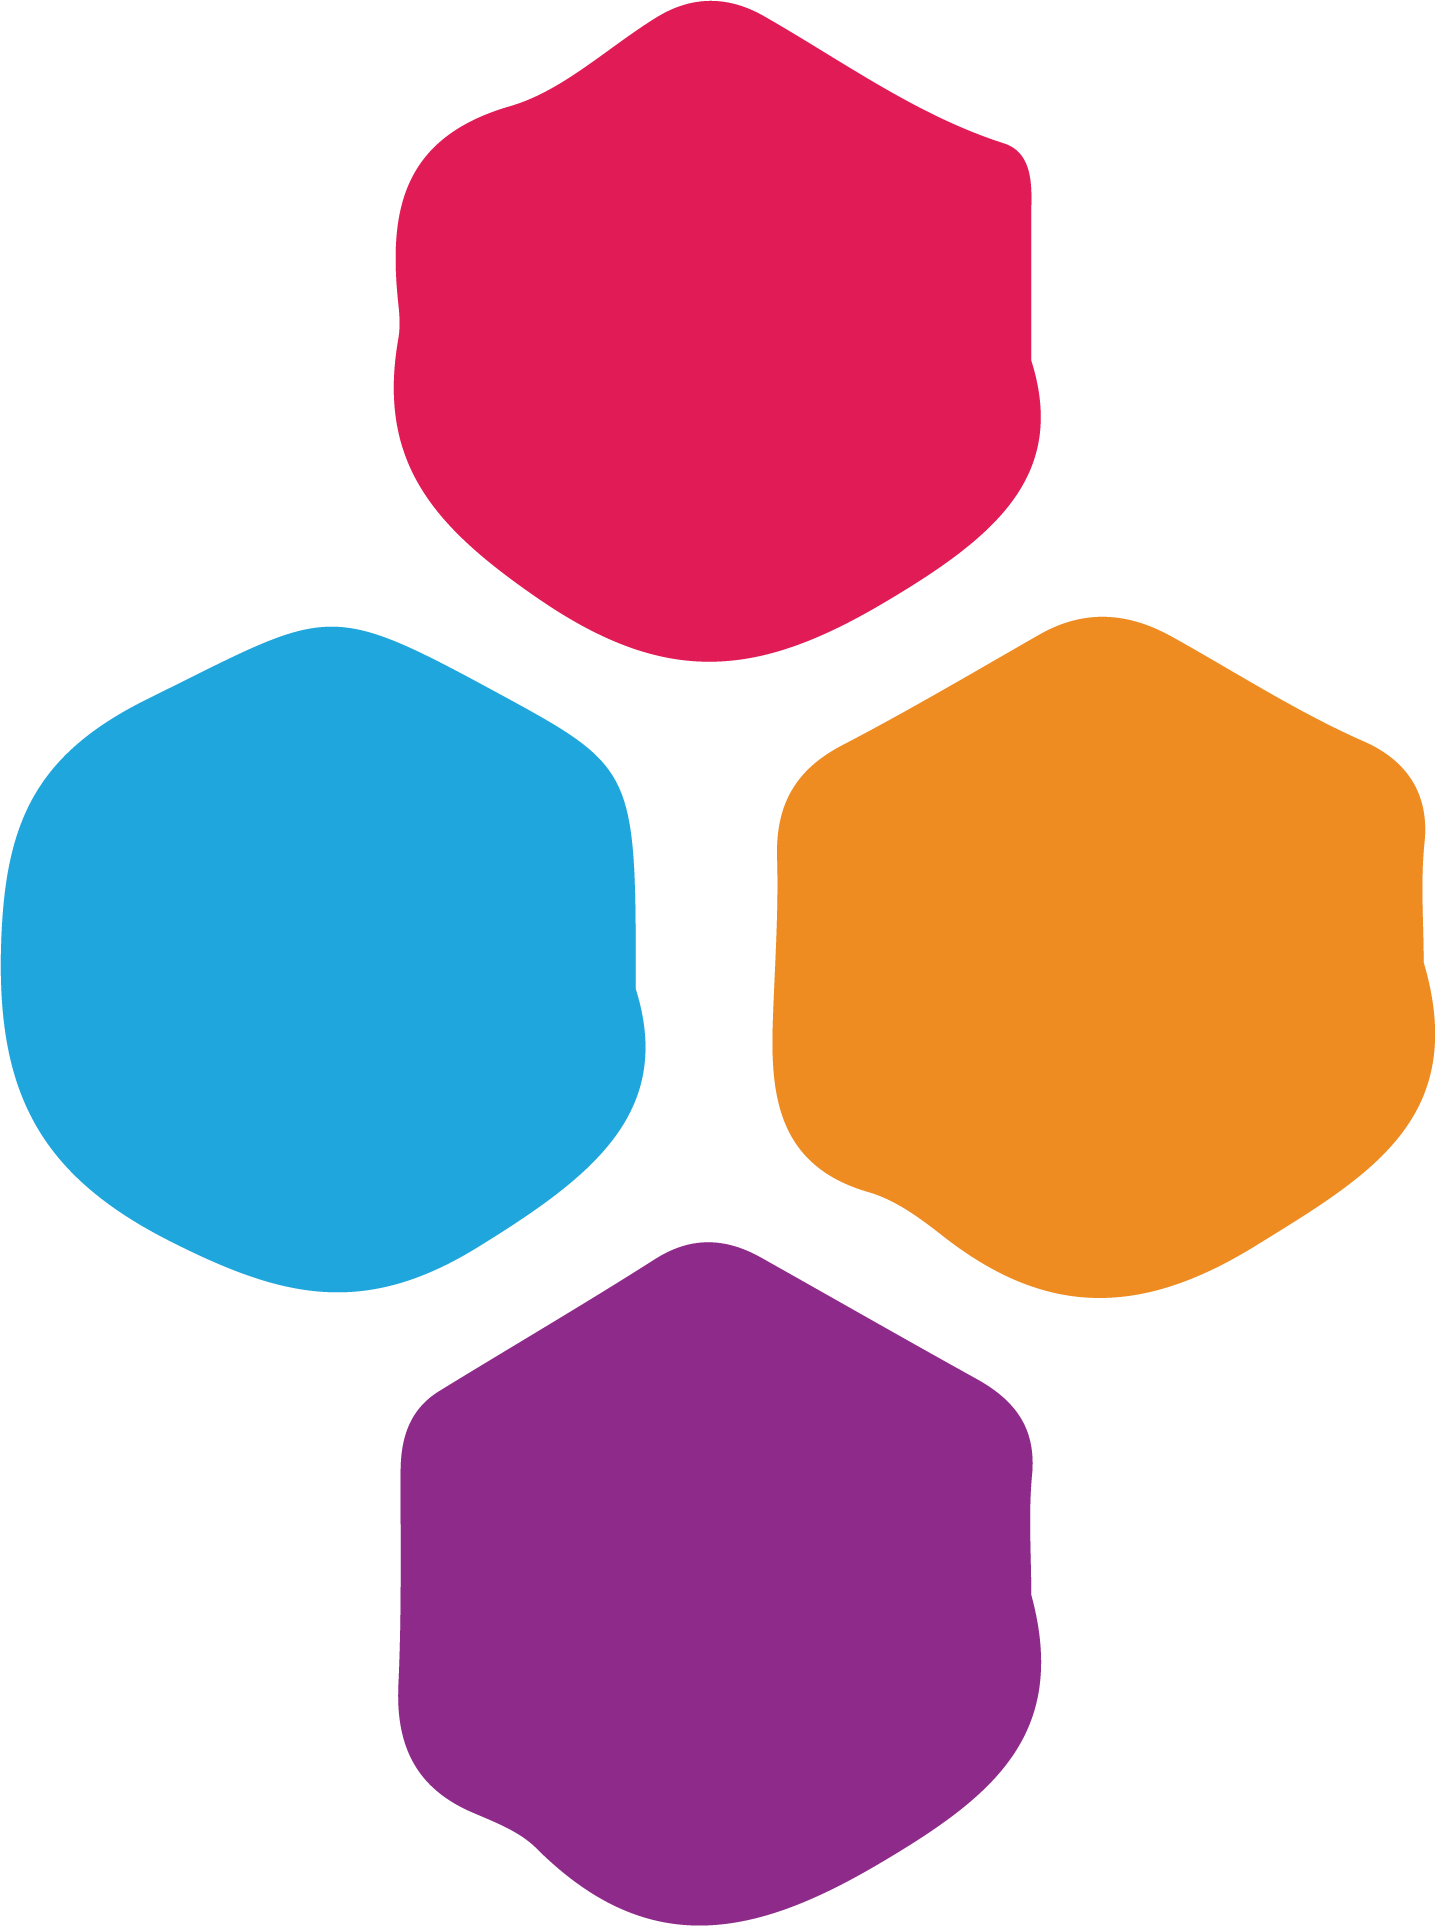 Jump Networks logo (transparent PNG)